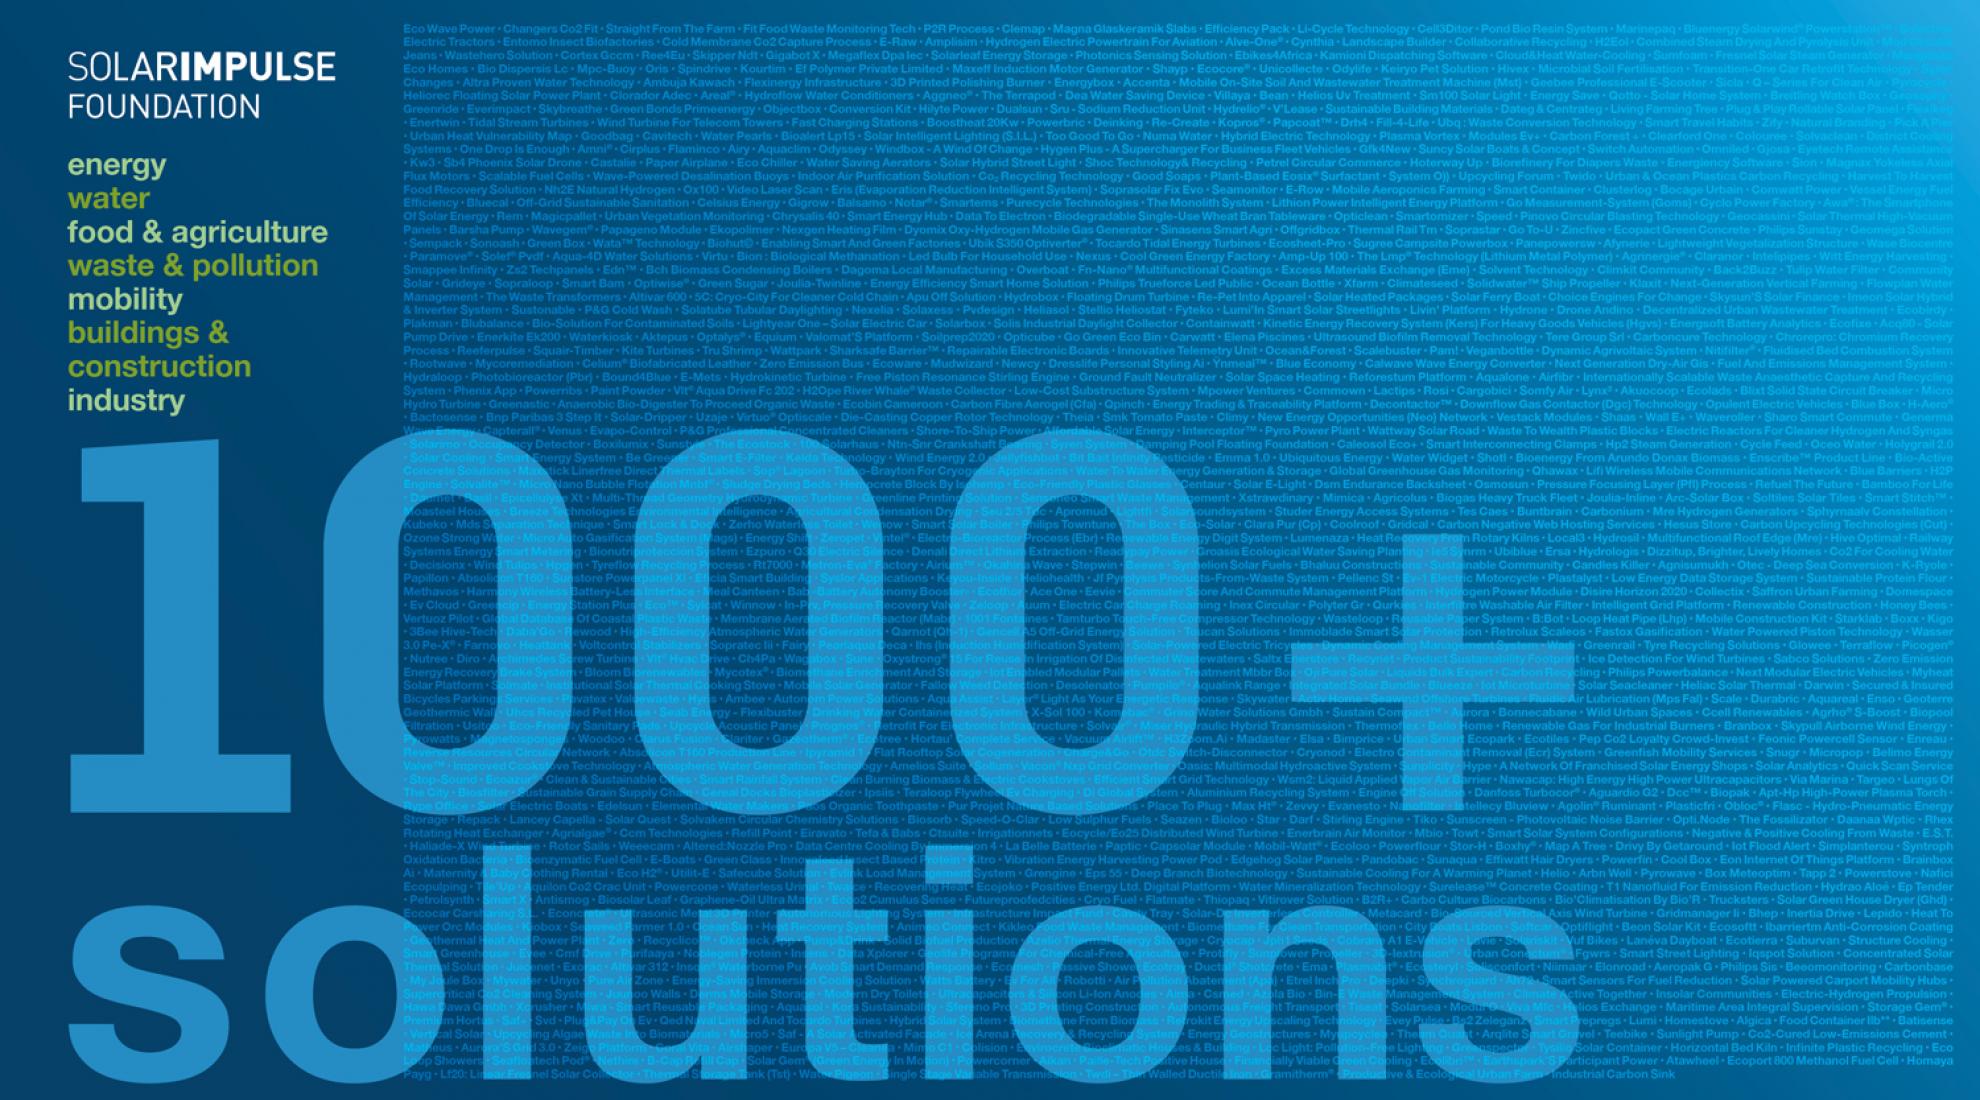 Solar Impulse Foundation: 1000+ solutions